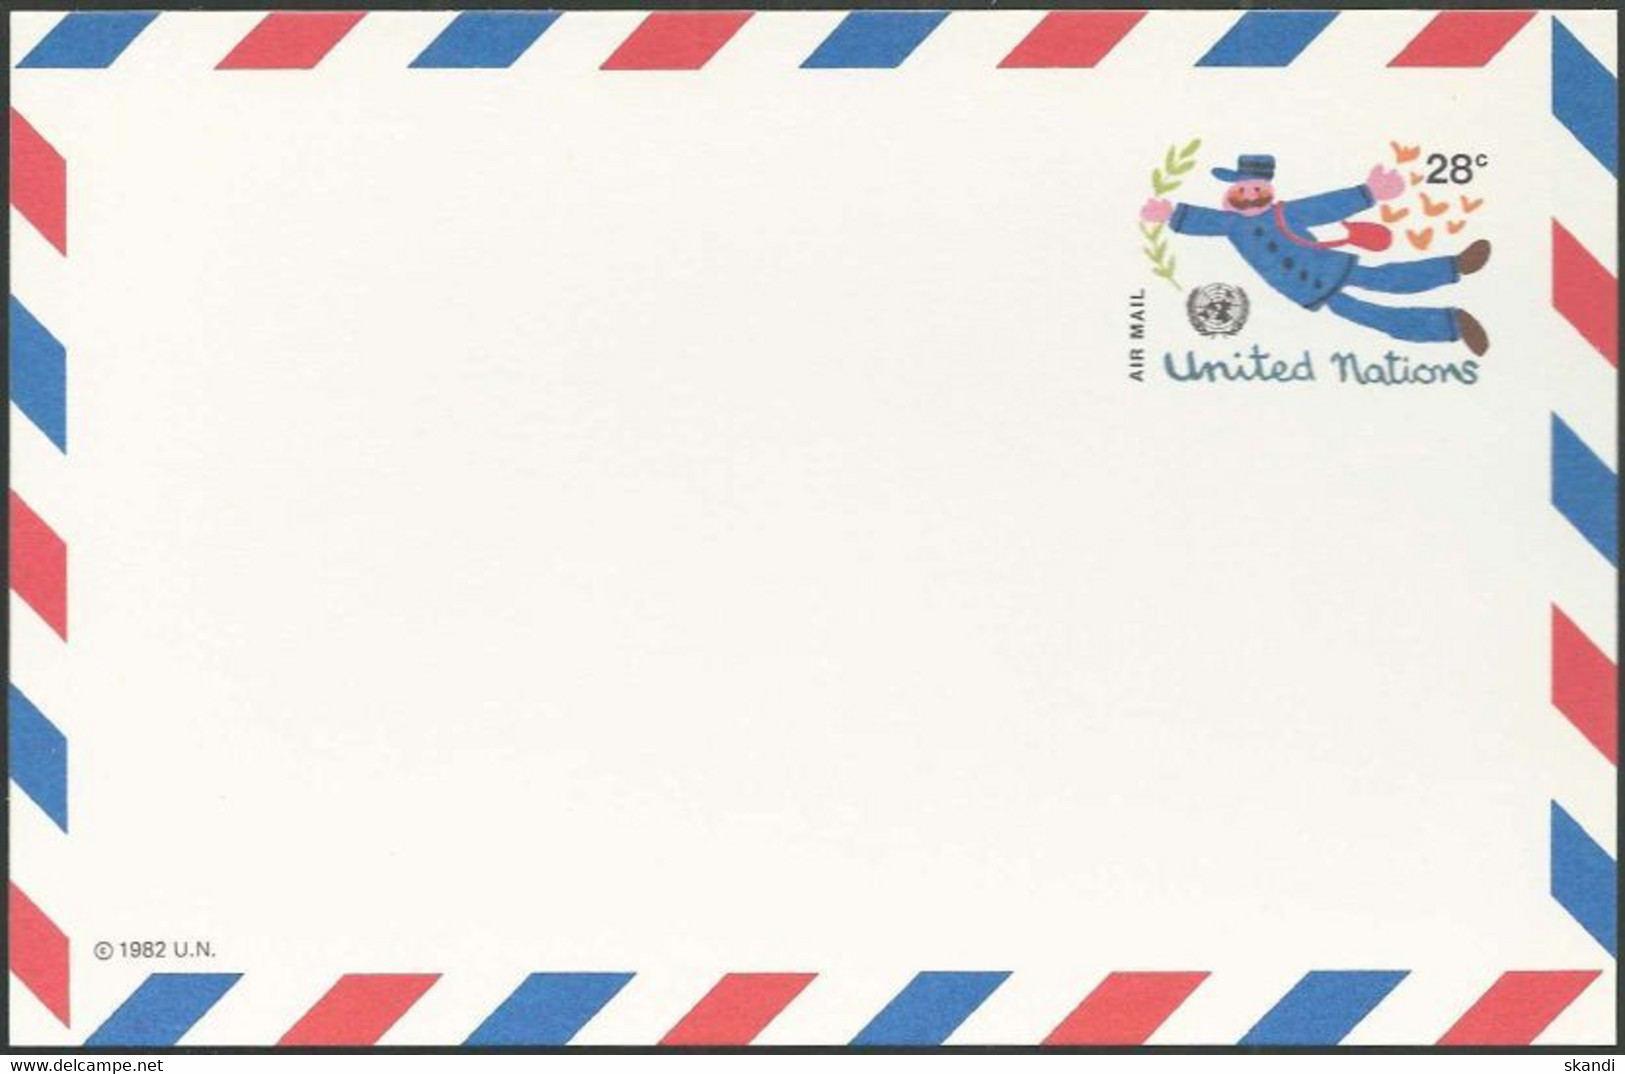 UNO NEW YORK 1982 Mi-Nr. LP 12 Ganzsache Luftpostkarte Ungebraucht - Airmail